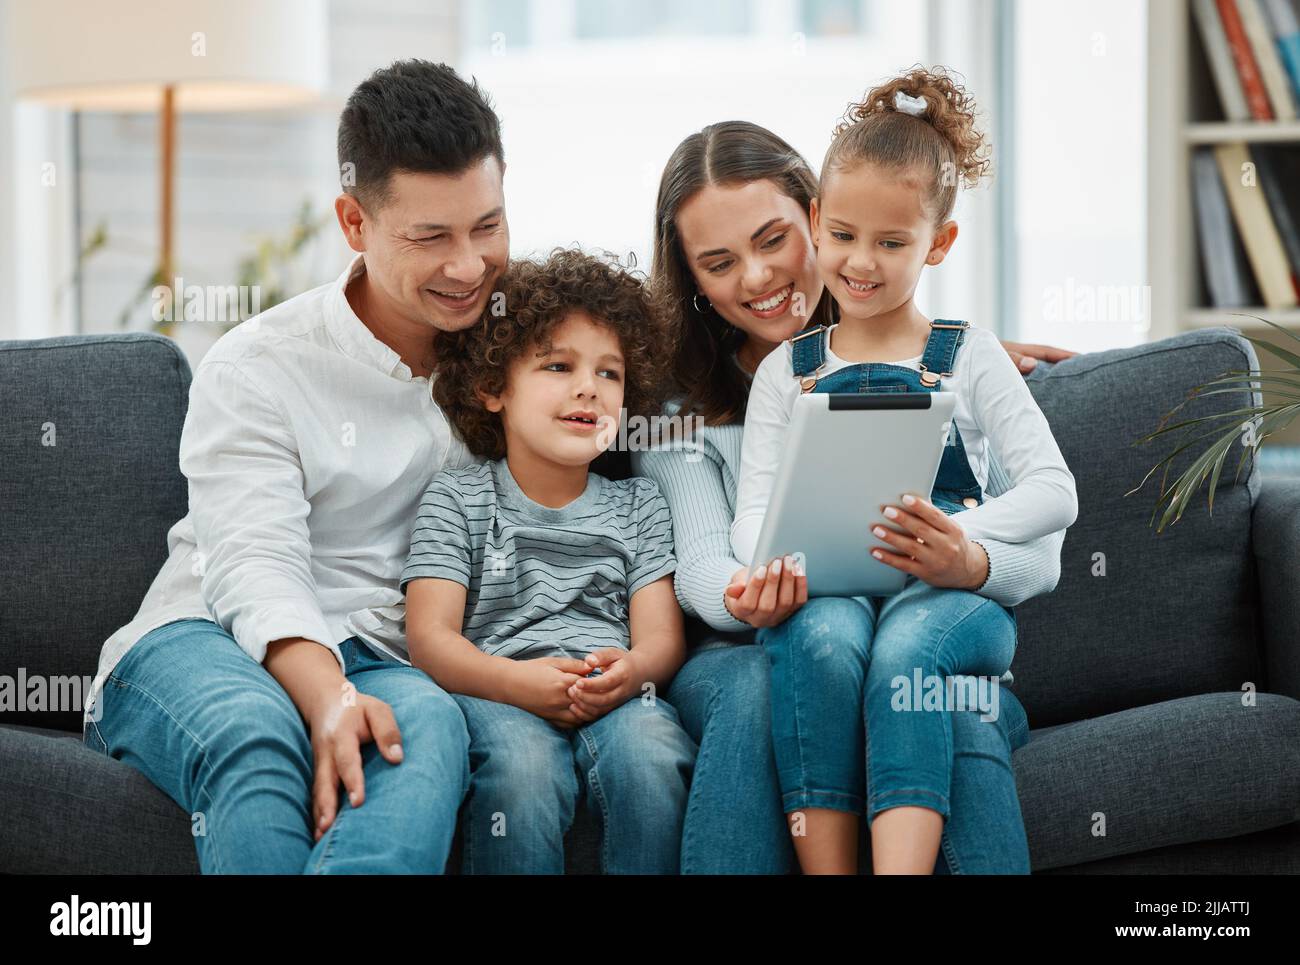 Familienzeit ist eine liebevolle Zeit. Eine junge Familie verbringt Zeit miteinander, während sie ein digitales Tablet nutzt. Stockfoto